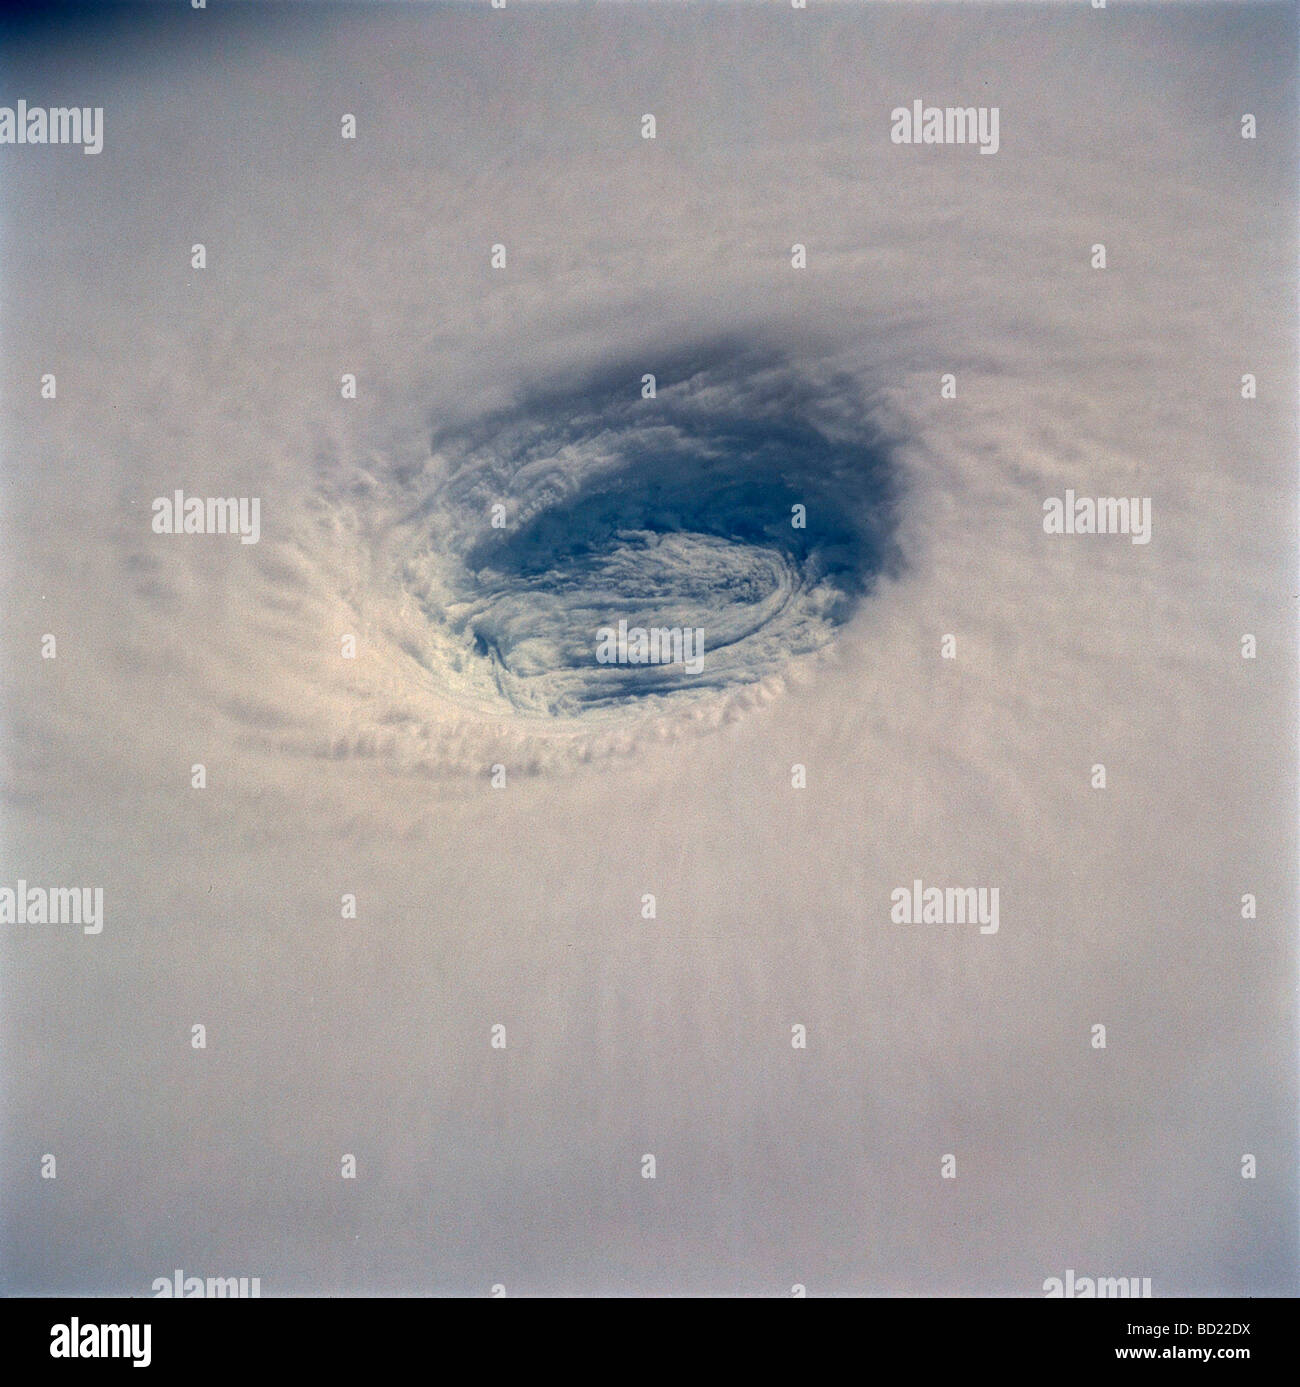 Eye of Hurricane Katrina - Stock Image - E155/0204 - Science Photo Library